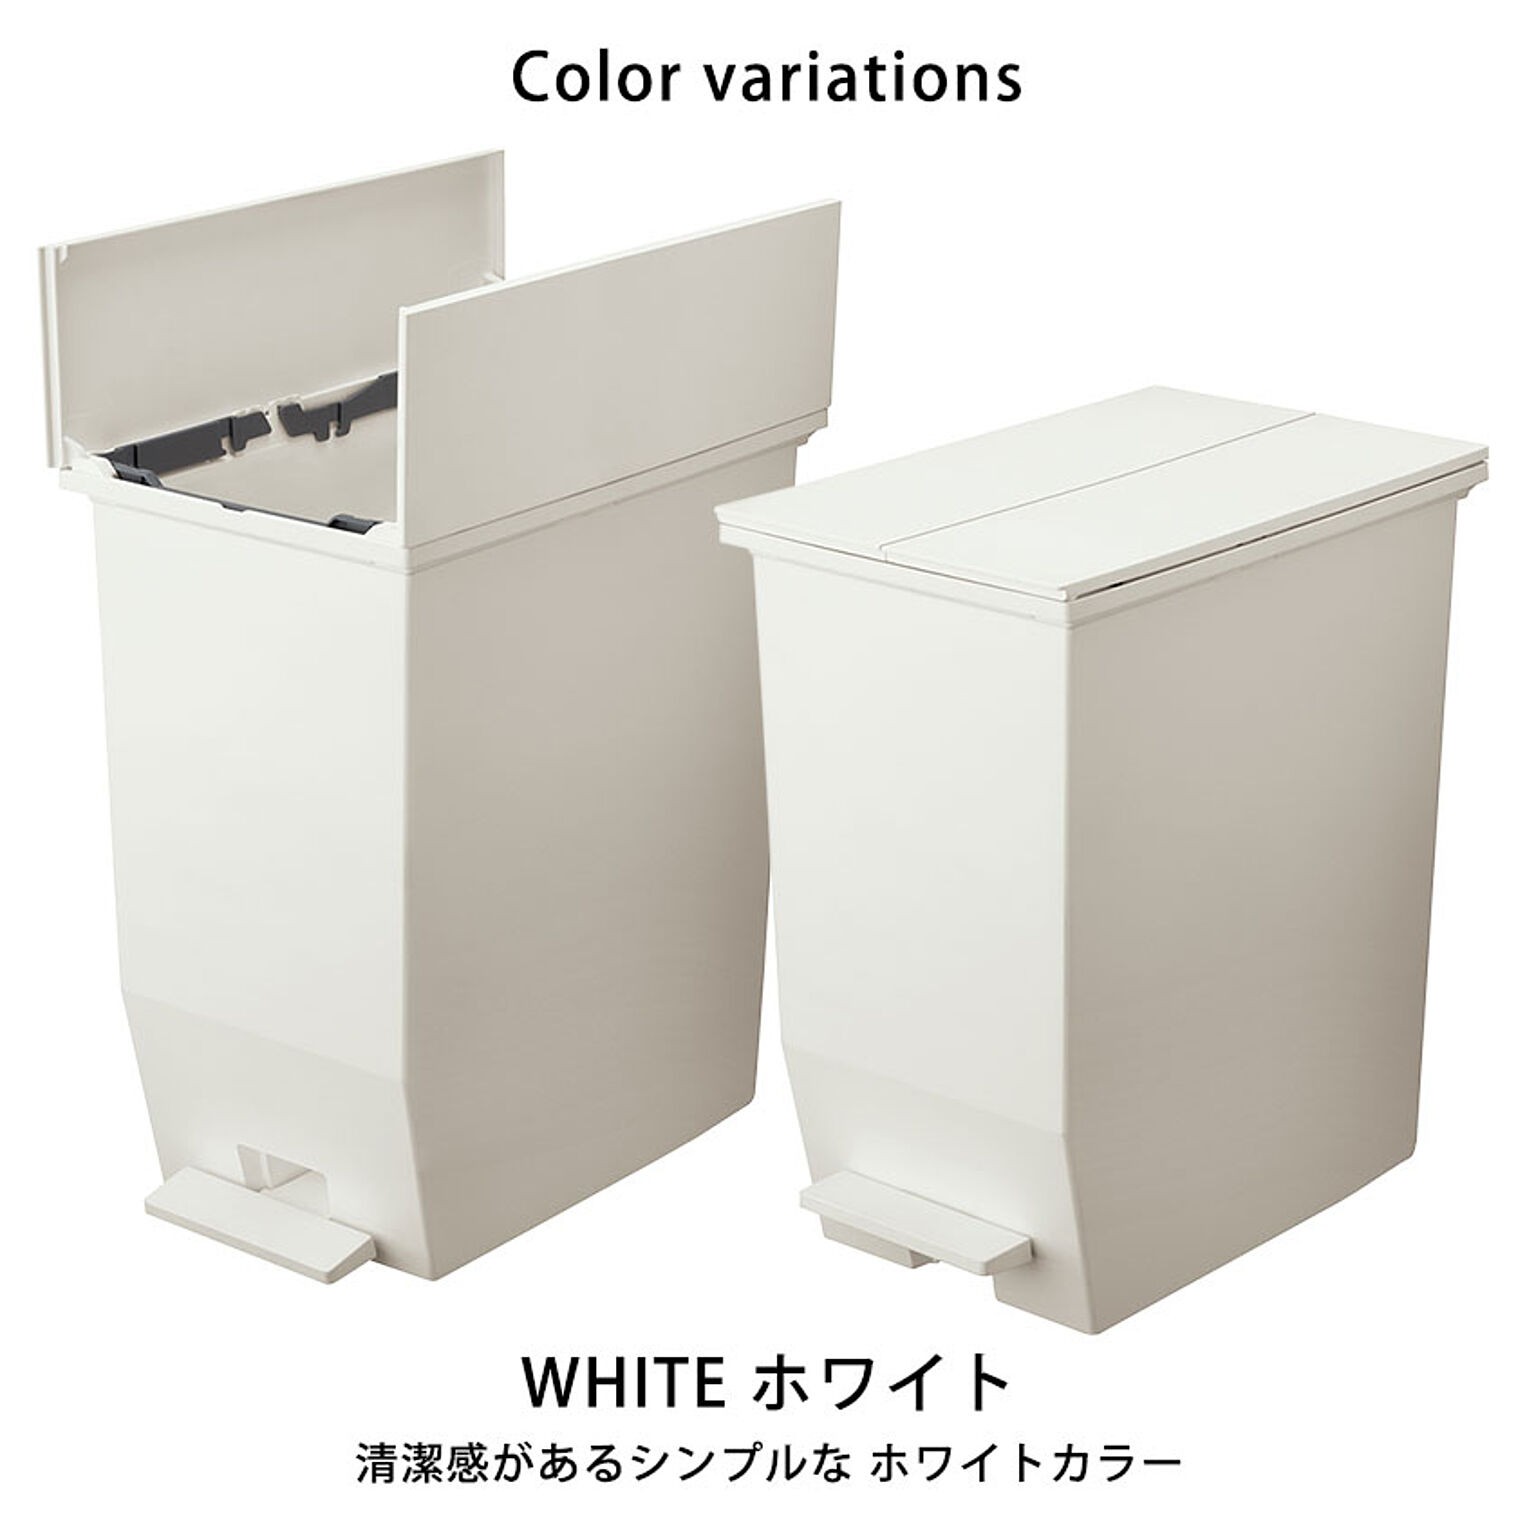 【お得な2個セット】ダストボックス 45L ゴミ箱 日本製 ごみばこ / SOLOW ソロウ ペダルオープンツイン 45L